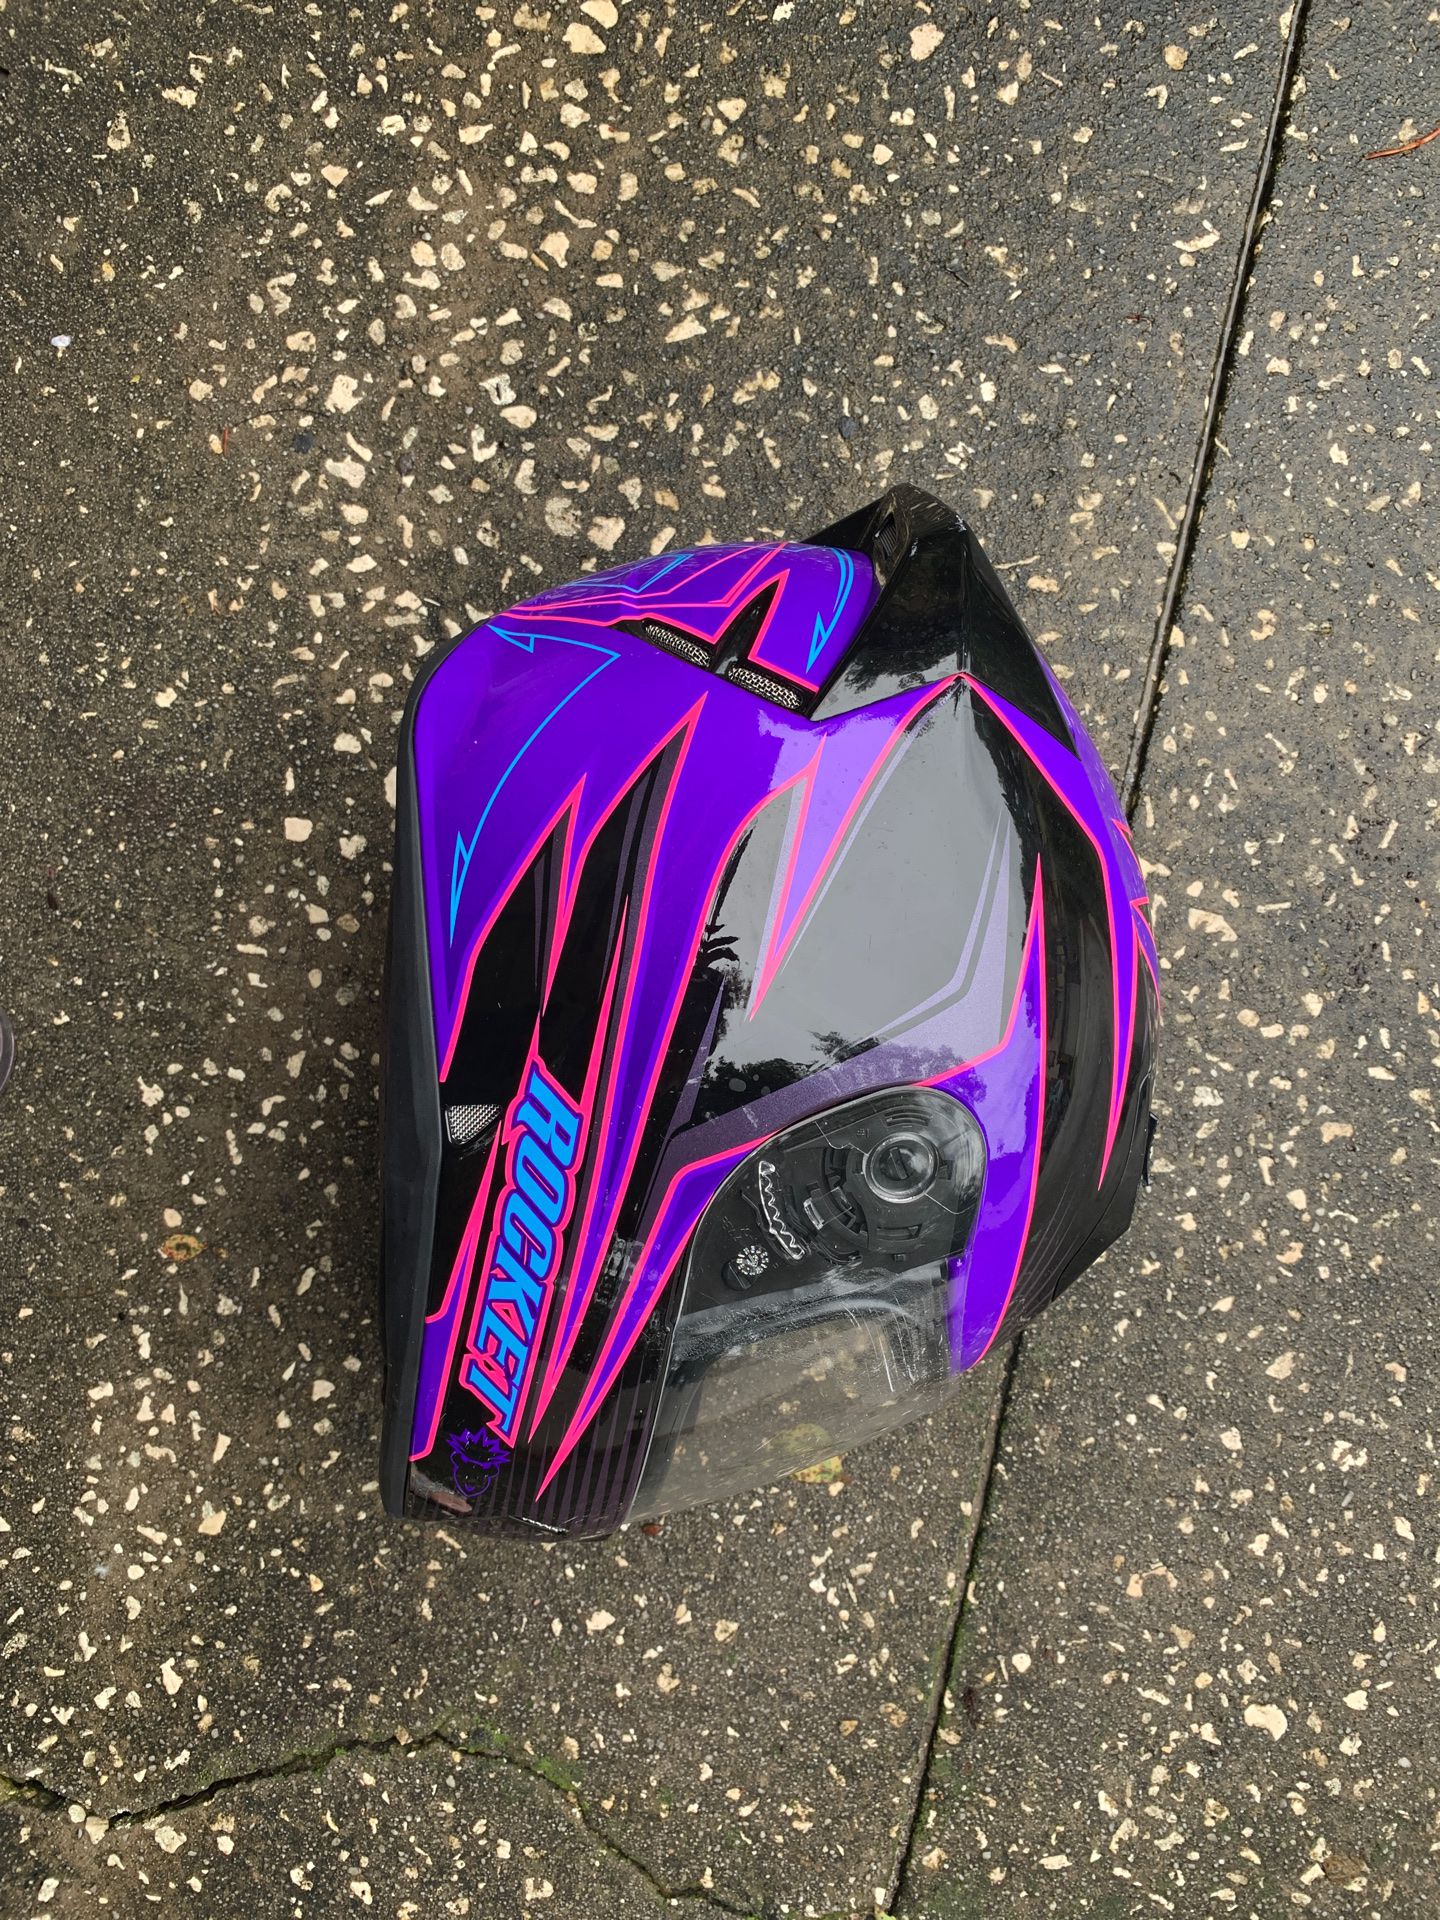 Free motorcycle helmet